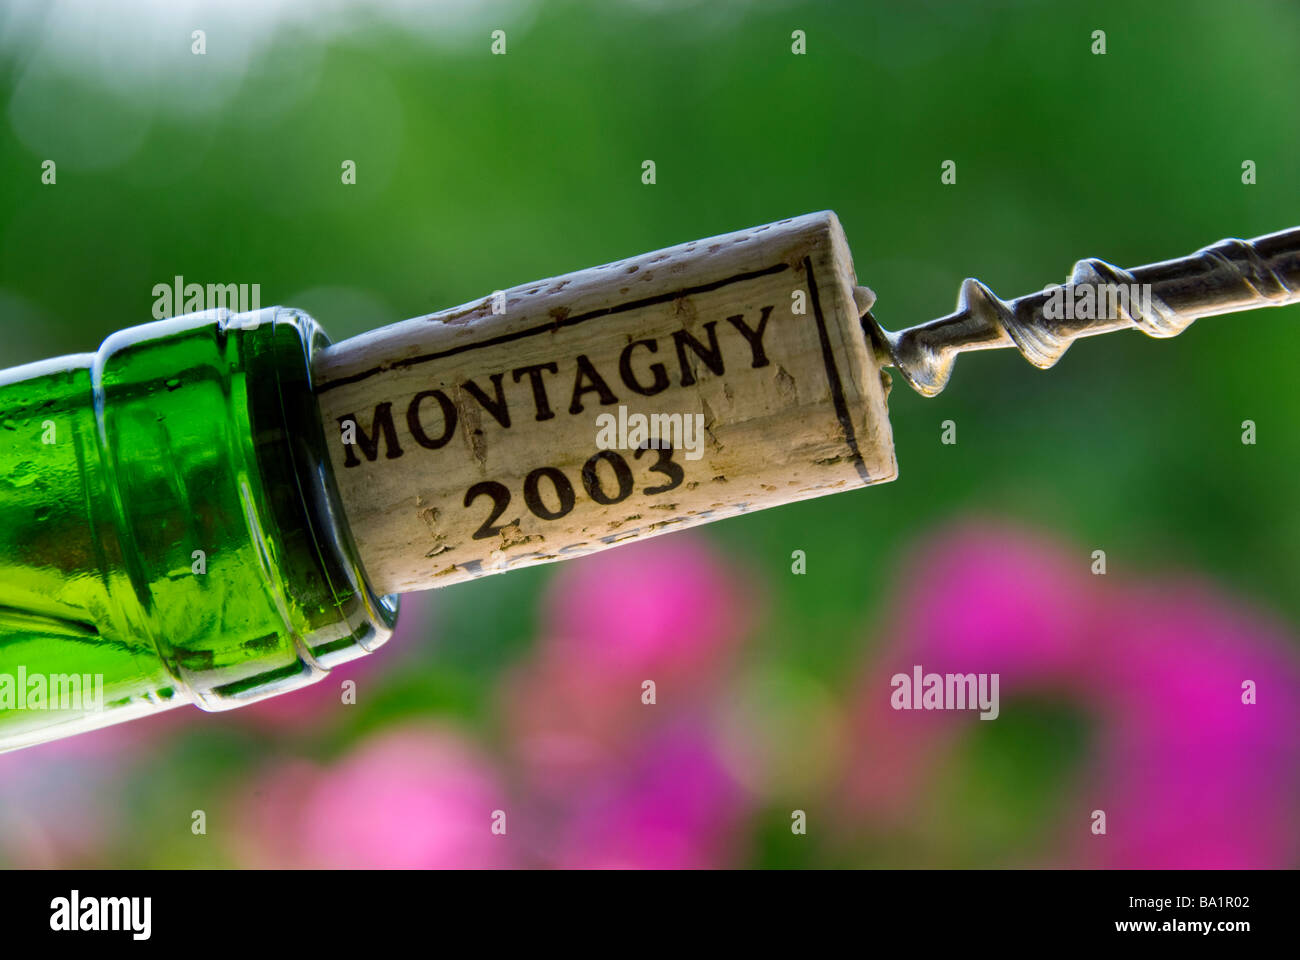 MONTAGNY BURGUND WEIN Korkenzieher ziehen einen Korken aus der Flasche Montagny Weißer Burgunder Wein 2003 Côte Chalonnaise Frankreich Stockfoto